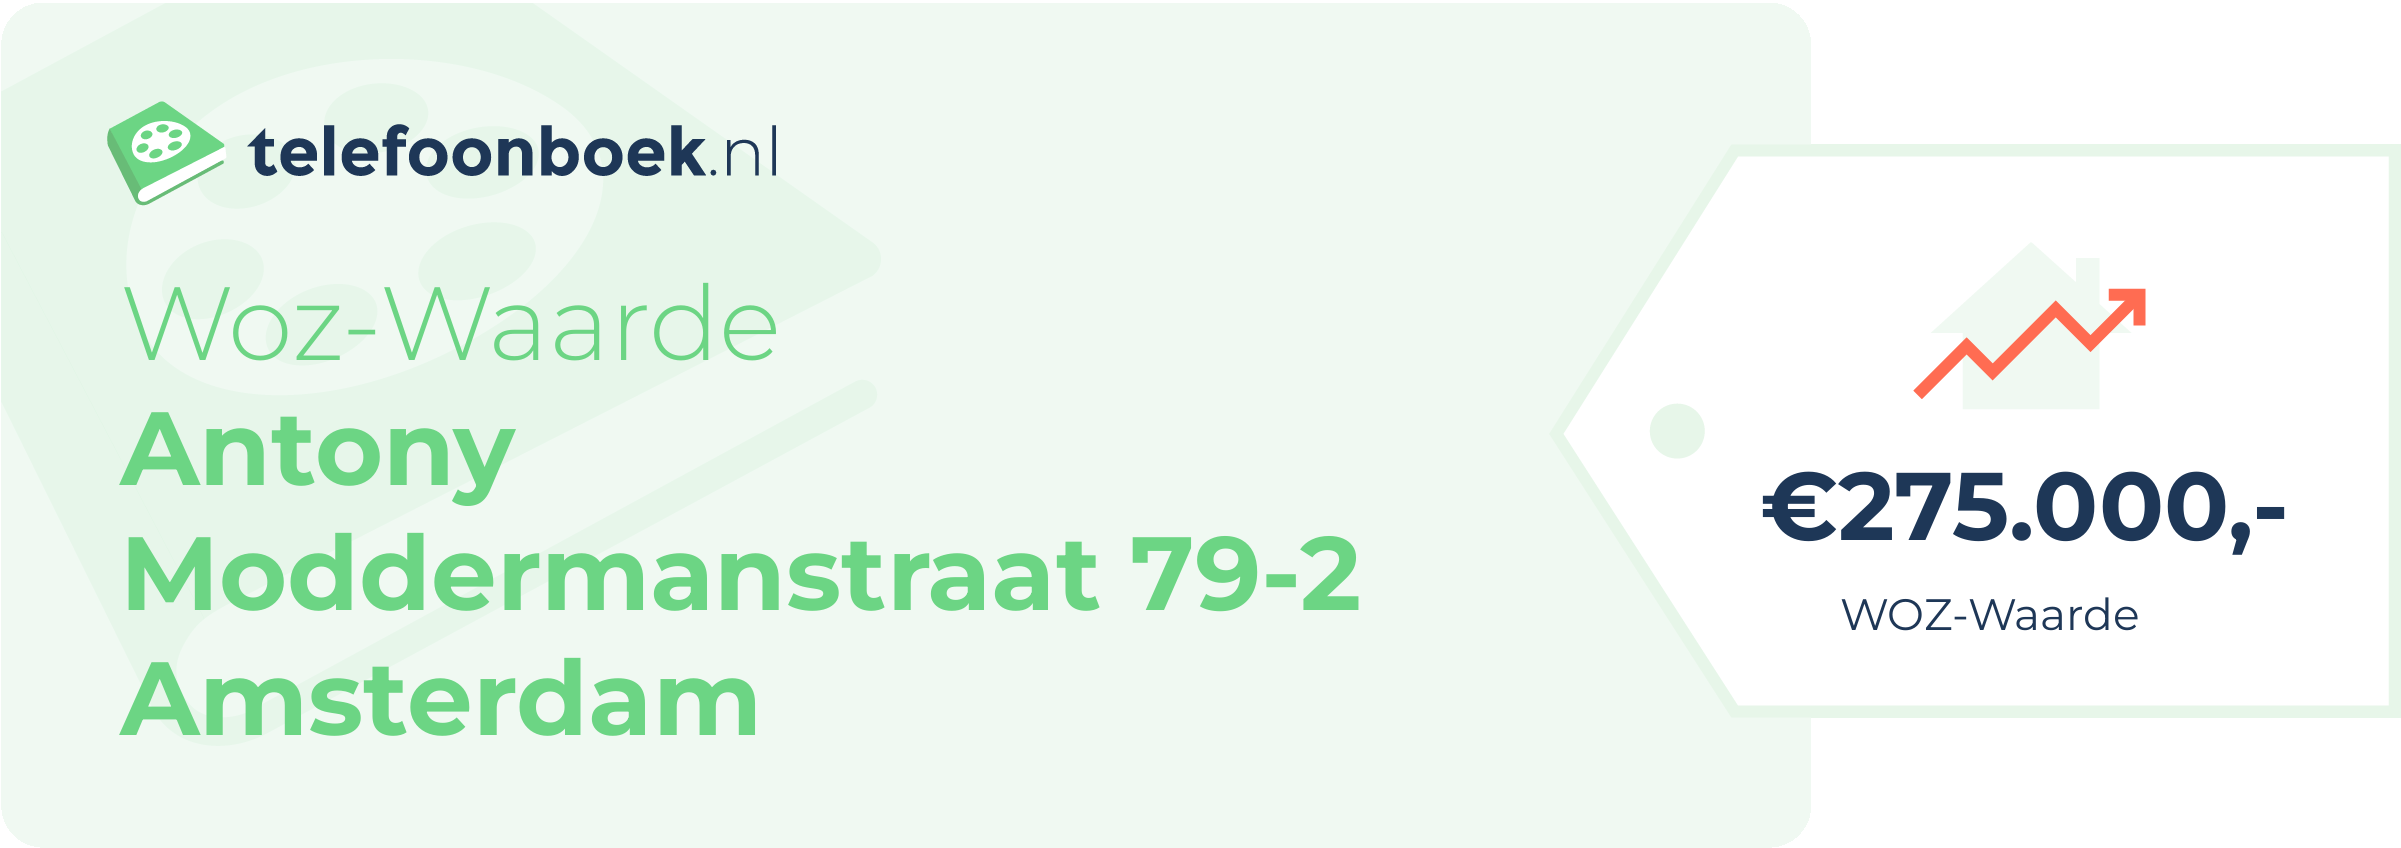 WOZ-waarde Antony Moddermanstraat 79-2 Amsterdam